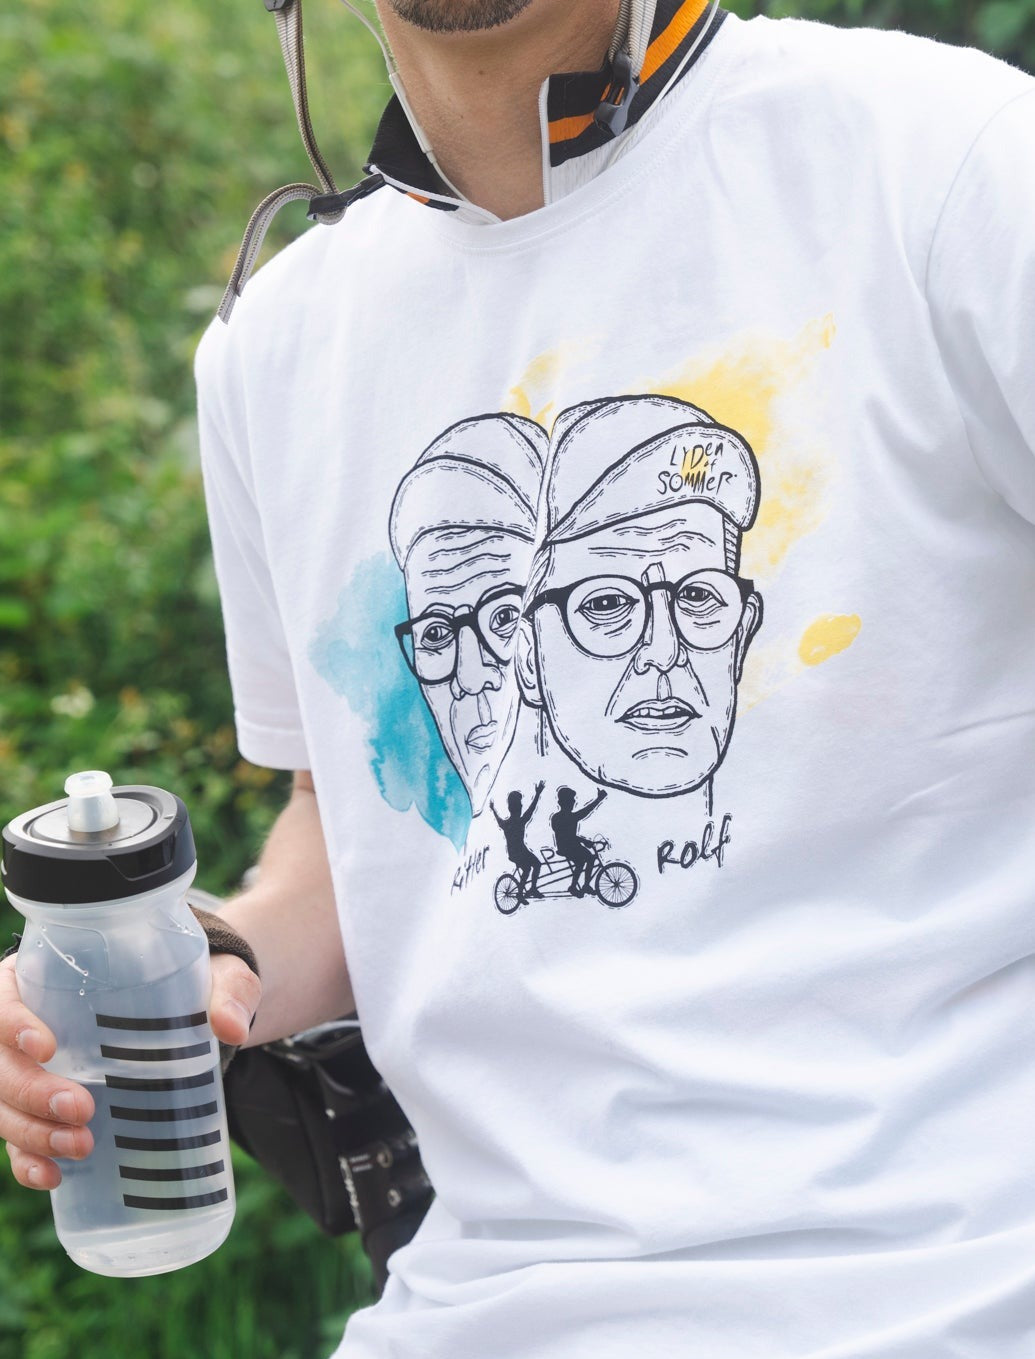 Rolf og Ritter T-shirt